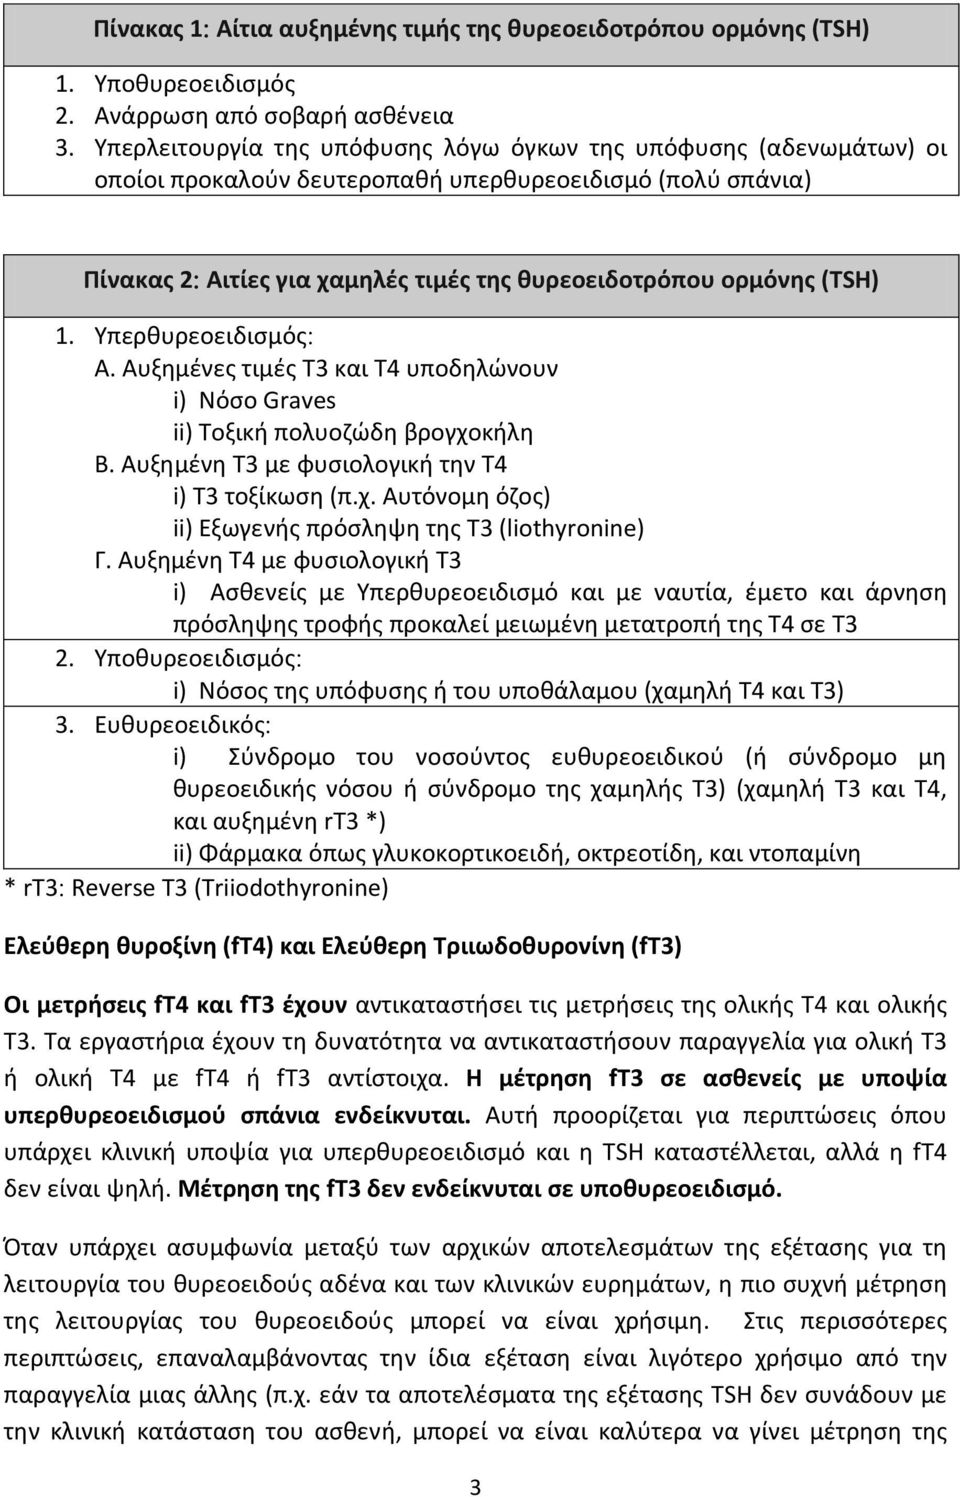 Υπερθυρεοειδισμός Α. Αυξημένες τιμές T3 και T4 υποδηλώνουν i) Νόσο Graves ii) Τοξική πολυοζώδη βρογχοκήλη B. Αυξημένη T3 με φυσιολογική την Τ4 i) T3 τοξίκωση (π.χ. Αυτόνομη όζος) ii) Εξωγενής πρόσληψη της T3 (liothyronine) Γ.